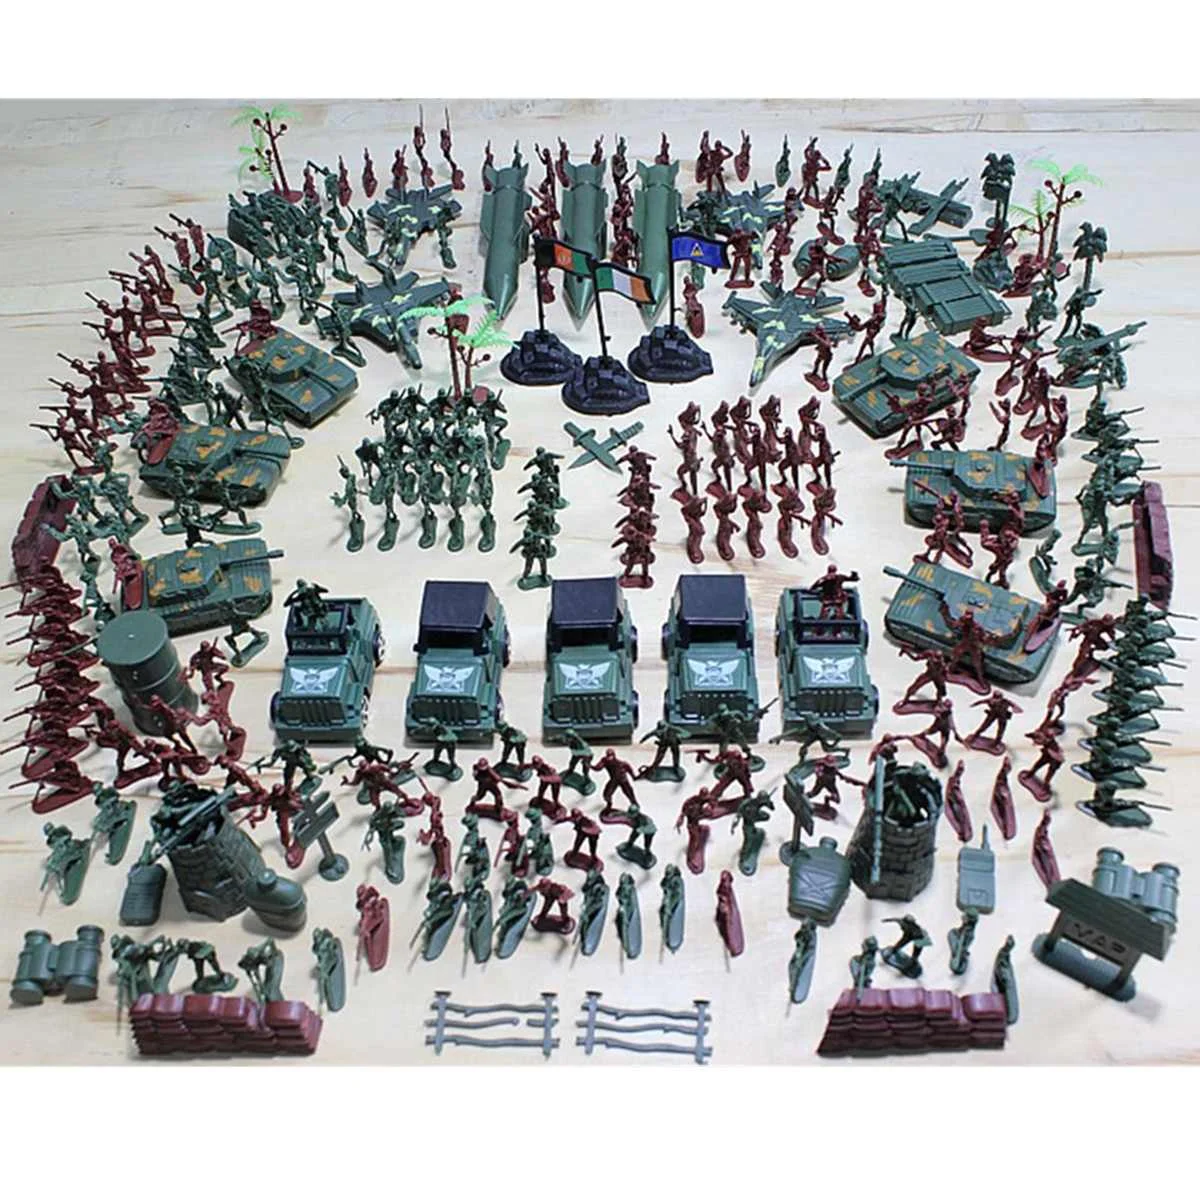 

Сумка Военная Модель стола для песка времен Второй мировой войны маленький солдат пластиковая игрушка 307 шт./Набор 4-9 см блок замок война вое...